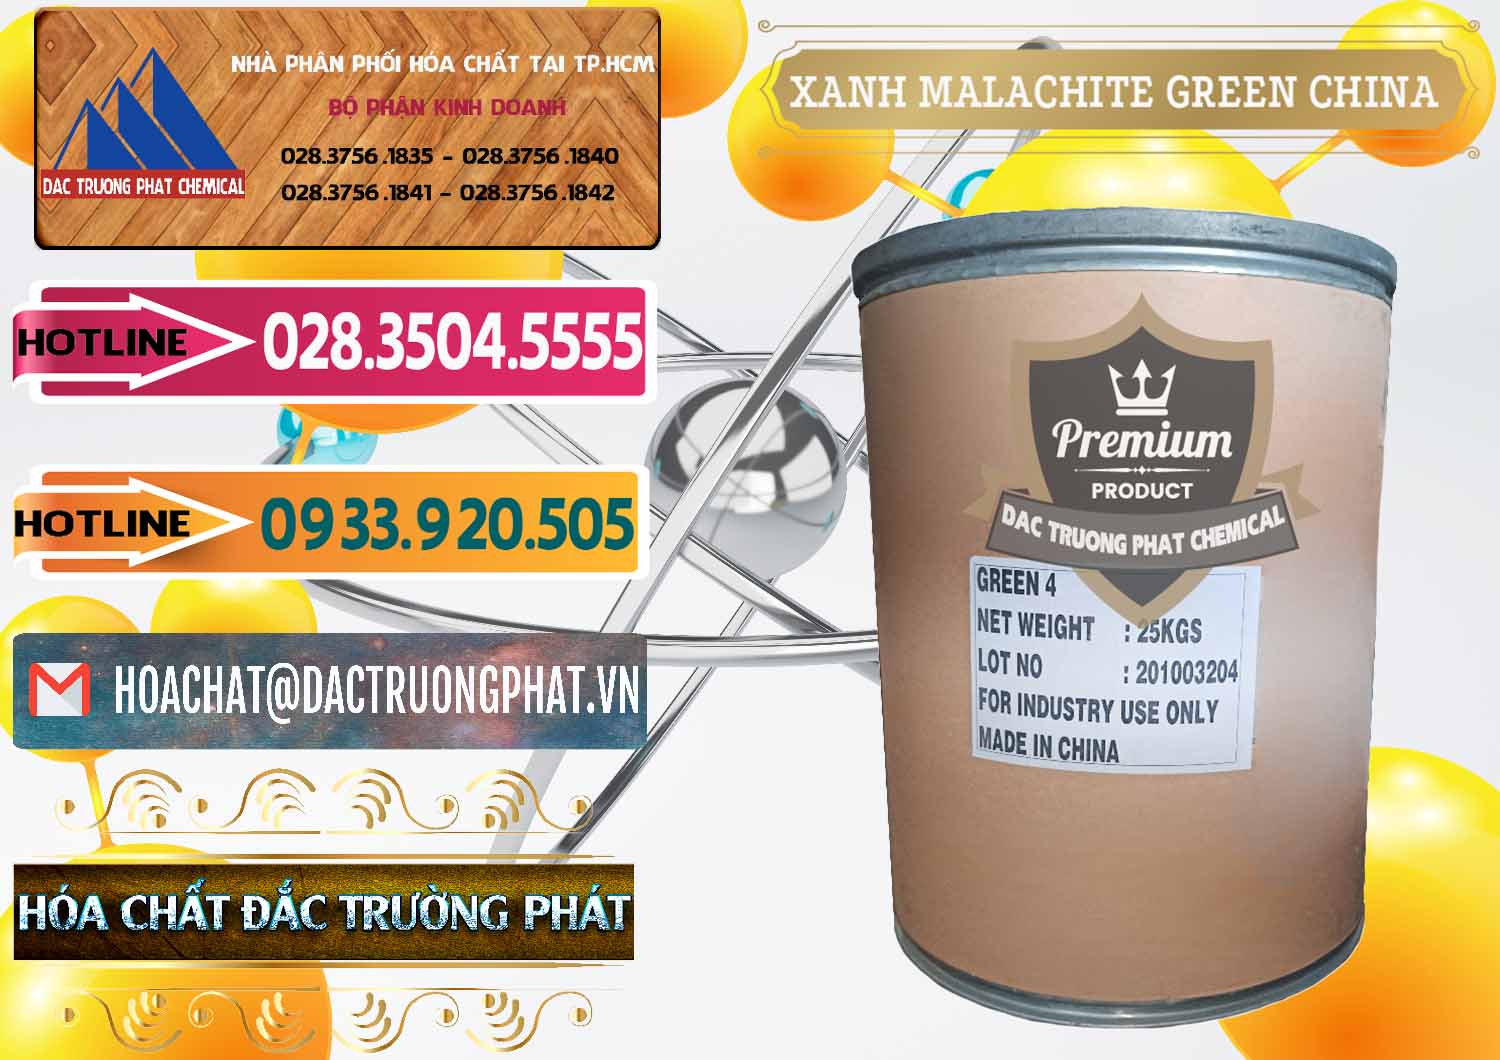 Đơn vị nhập khẩu ( bán ) Xanh Malachite Green Trung Quốc China - 0325 - Phân phối và nhập khẩu hóa chất tại TP.HCM - dactruongphat.vn